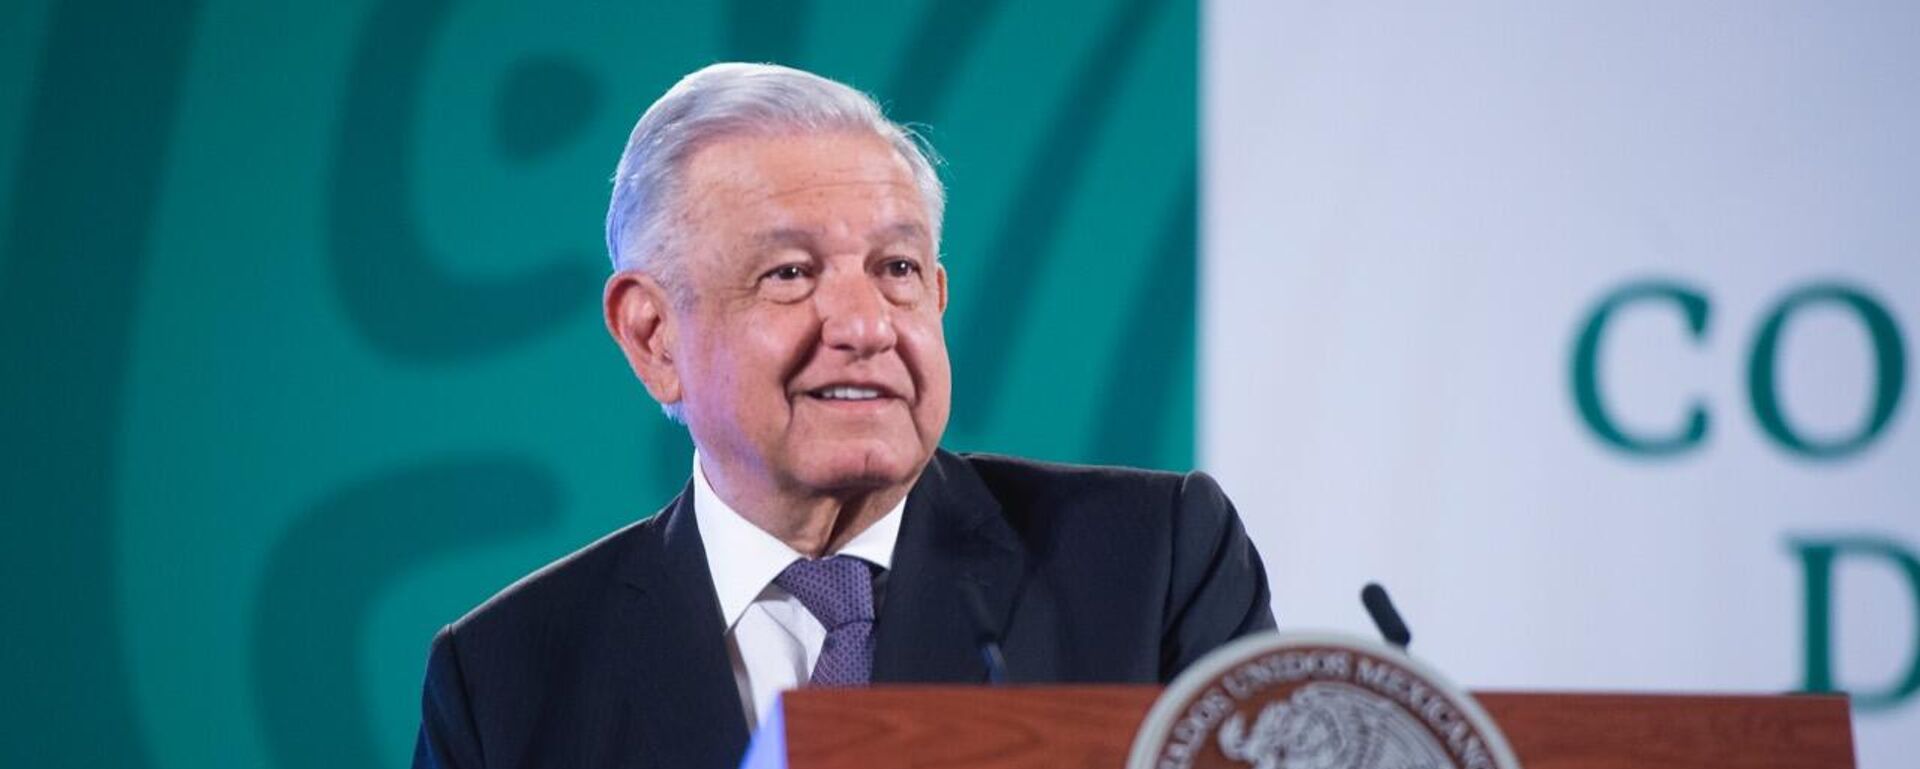 Andrés Manuel López Obrador, presidente de México - Sputnik Mundo, 1920, 01.10.2021